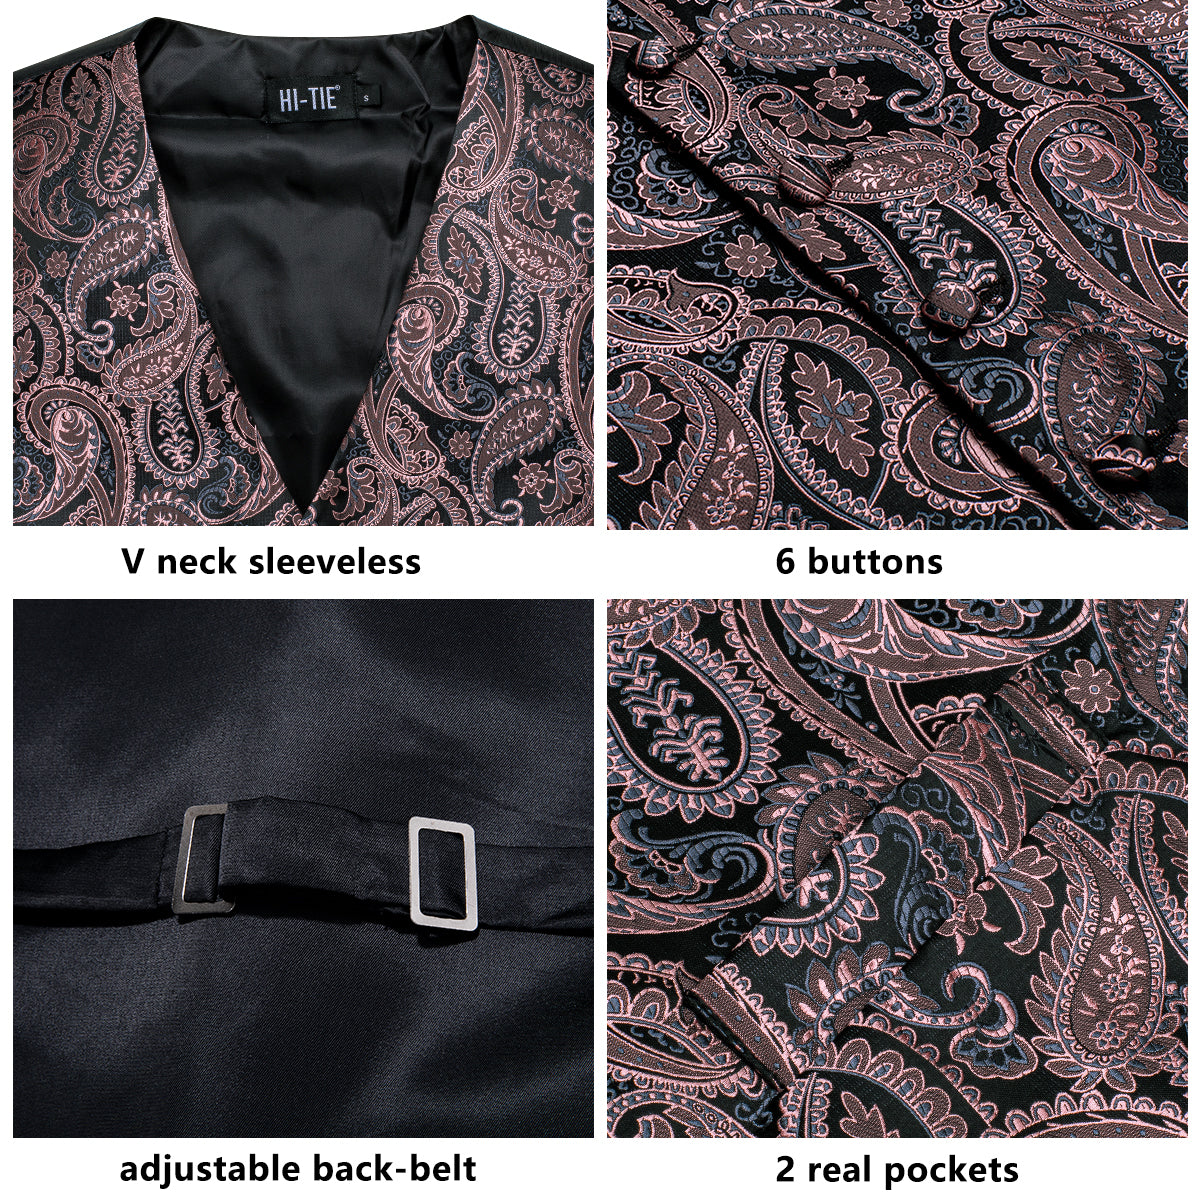 Black Coral Pink Paisley Silk Men's Vest Hanky Cufflinks Tie Set Waistcoat Suit Set